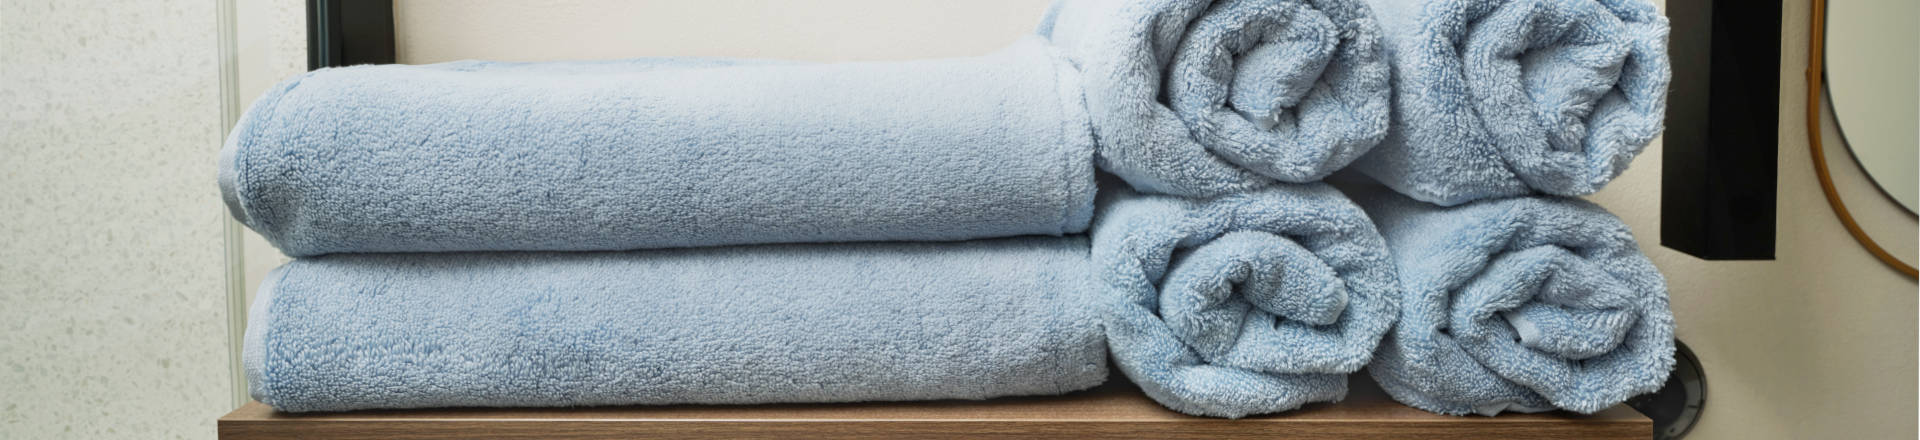 Fotografie bavlněného ručníku SCANquilt v pěkné koupelně, reálná fotografie